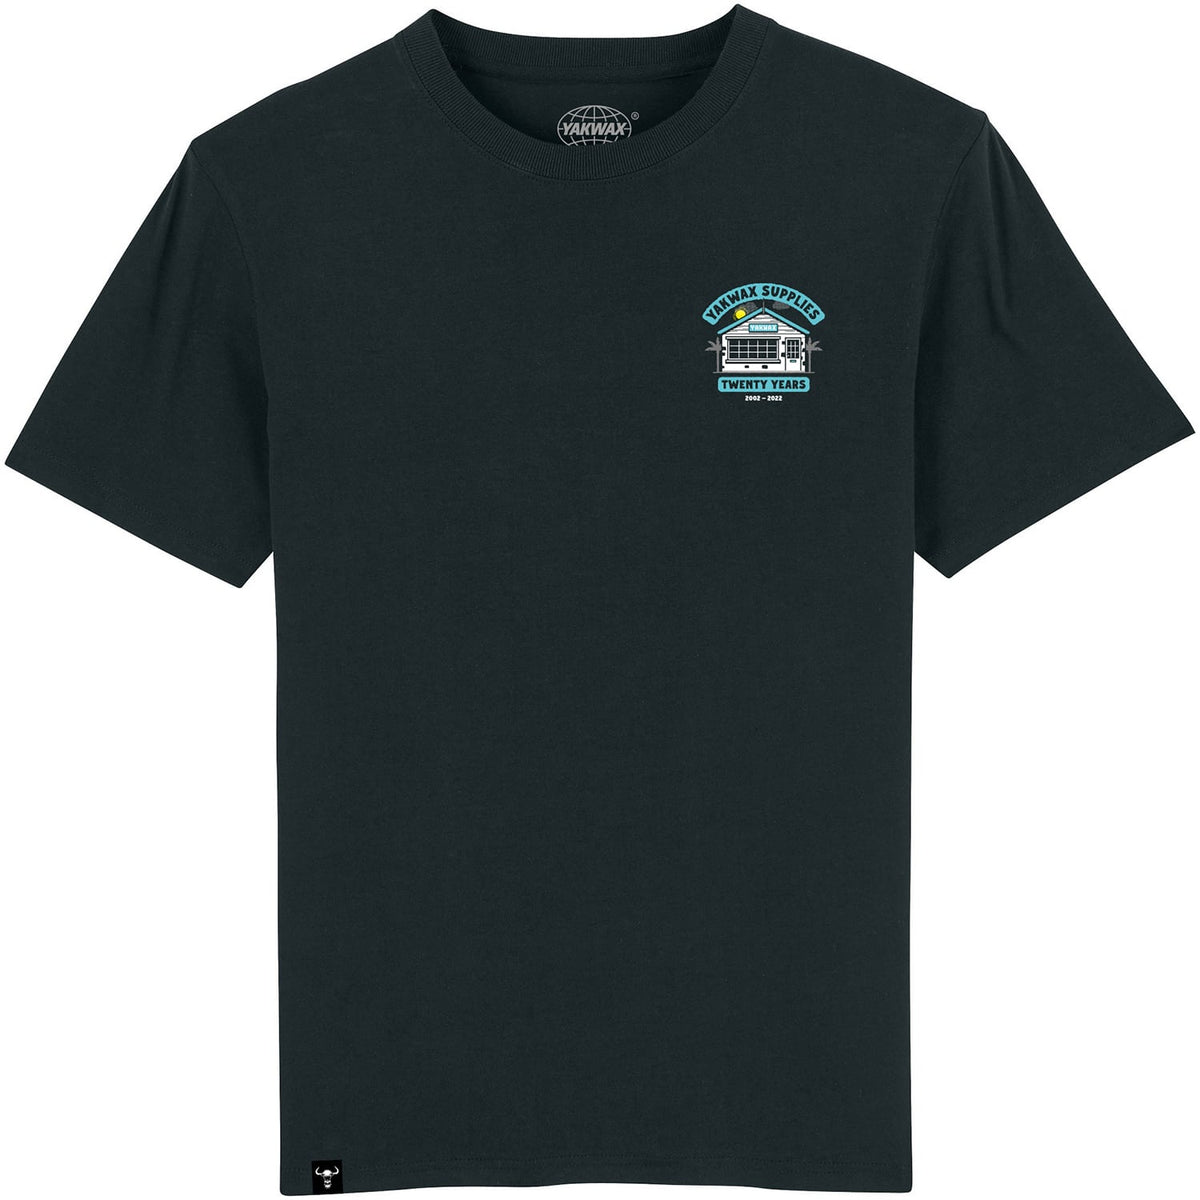 Yakwax 20 Year Anniversary T-Shirt - Black - Mens Graphic T-Shirt by Yakwax